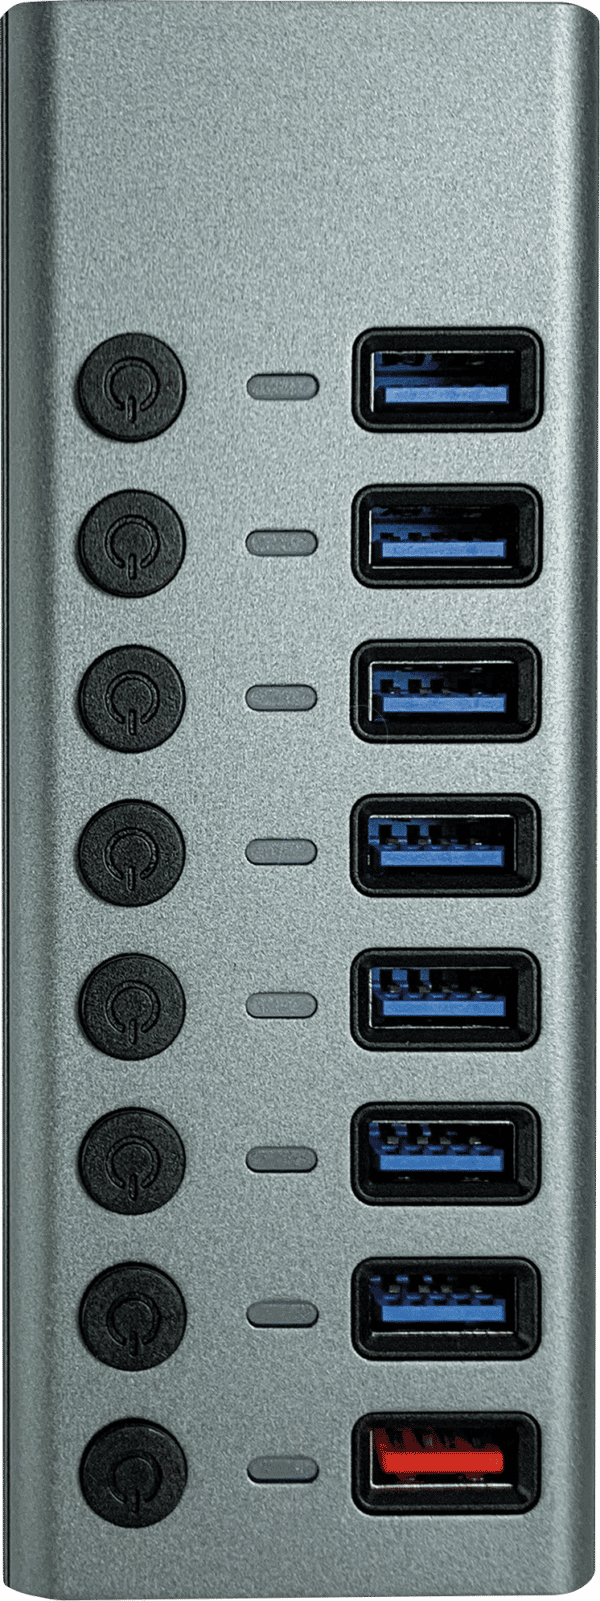 MATR CH 11 L - USB 3.0 8-Port Hub